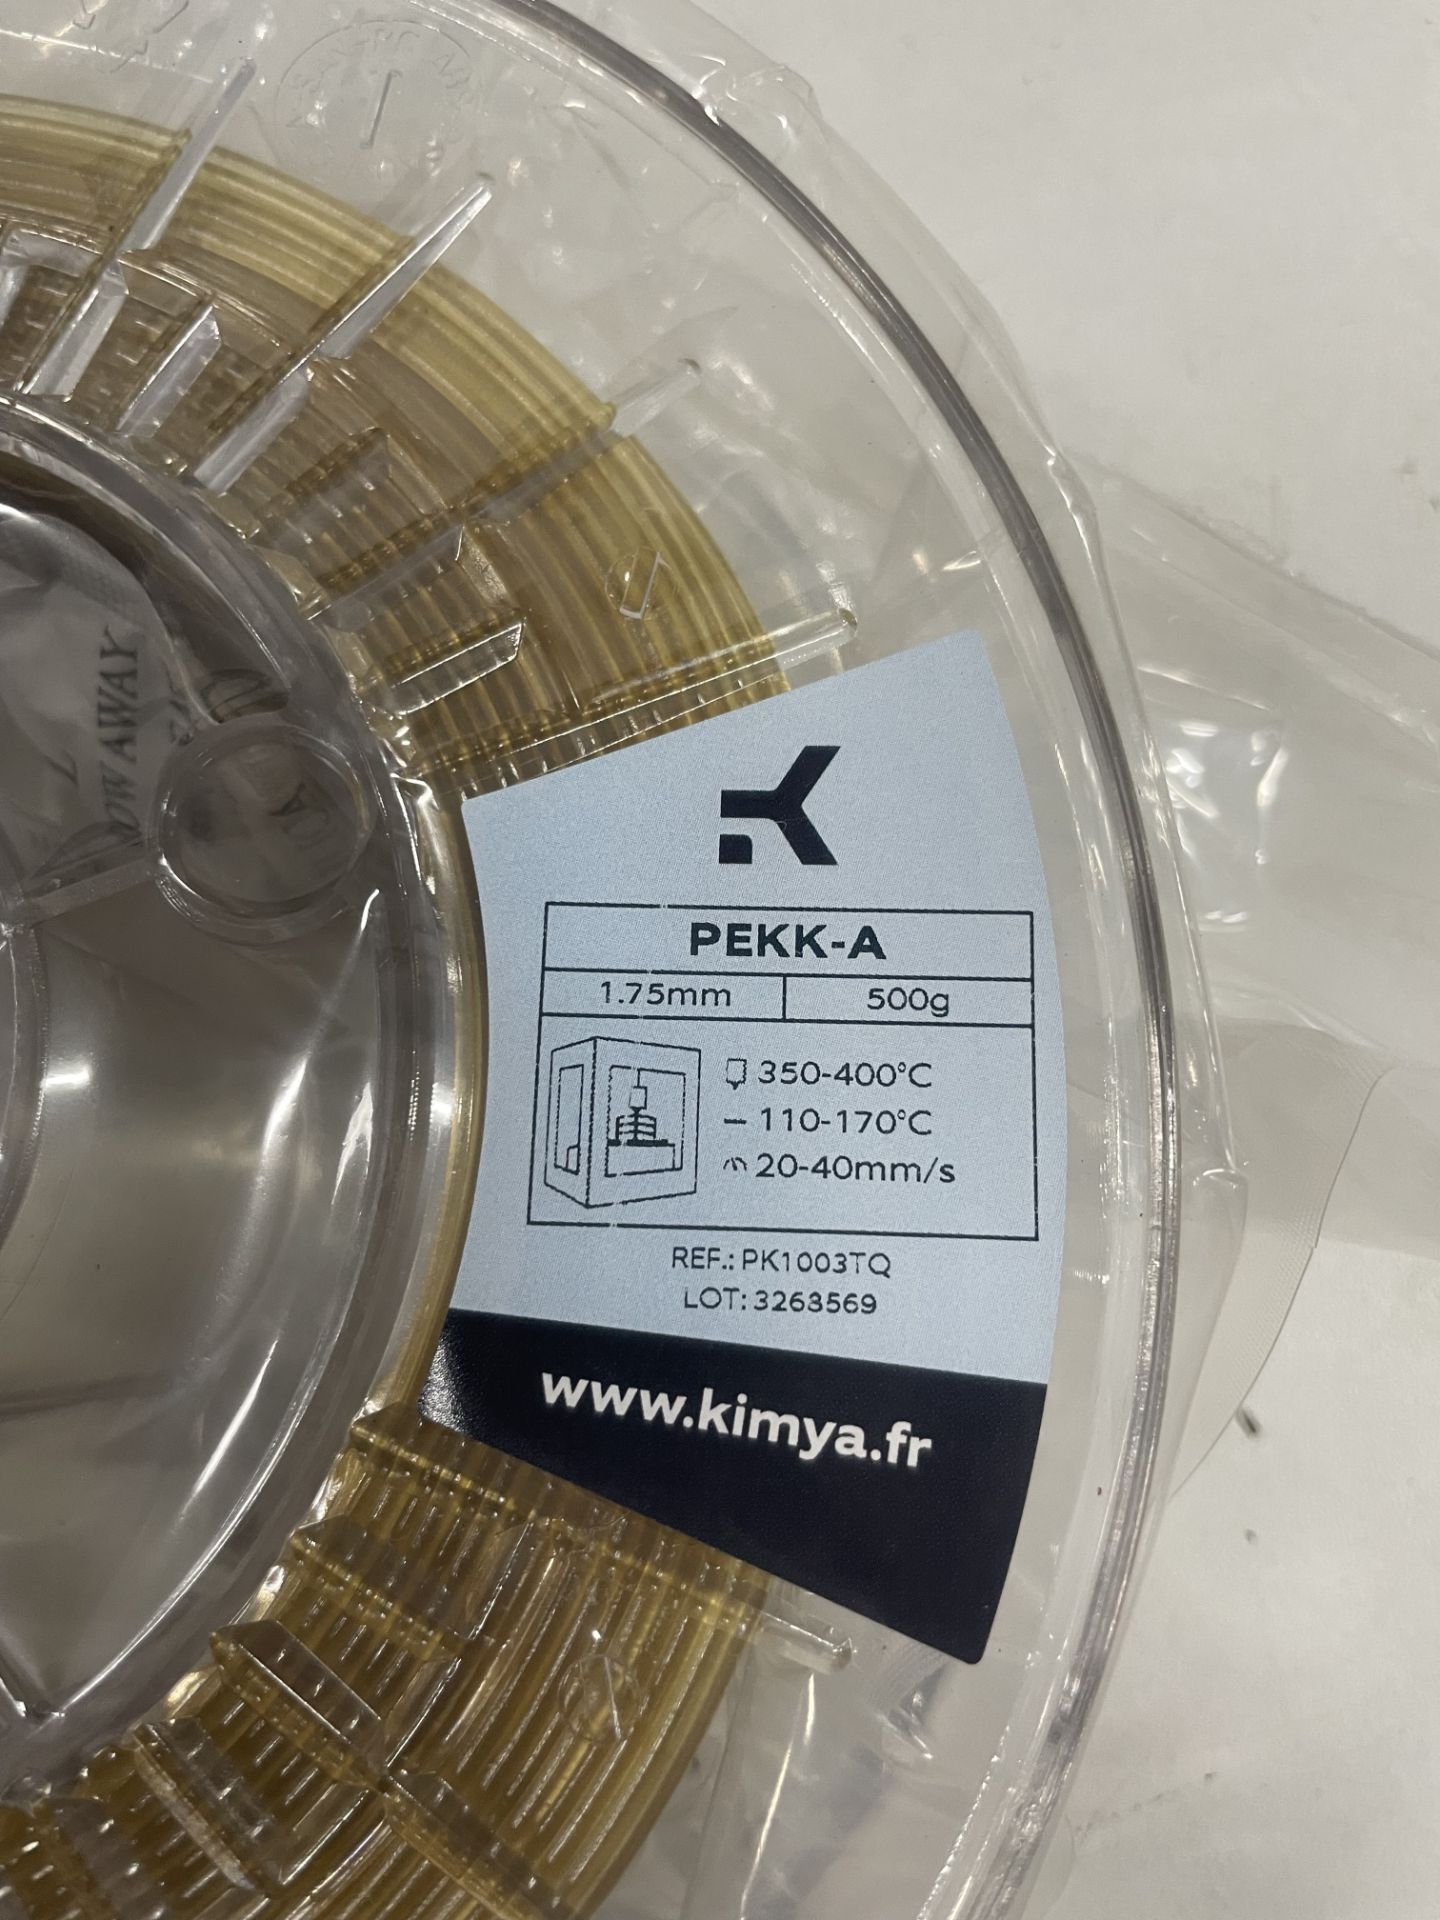 1 Roll 3D Filament PELKK-A amber | 1.75mm 500g - Image 3 of 3